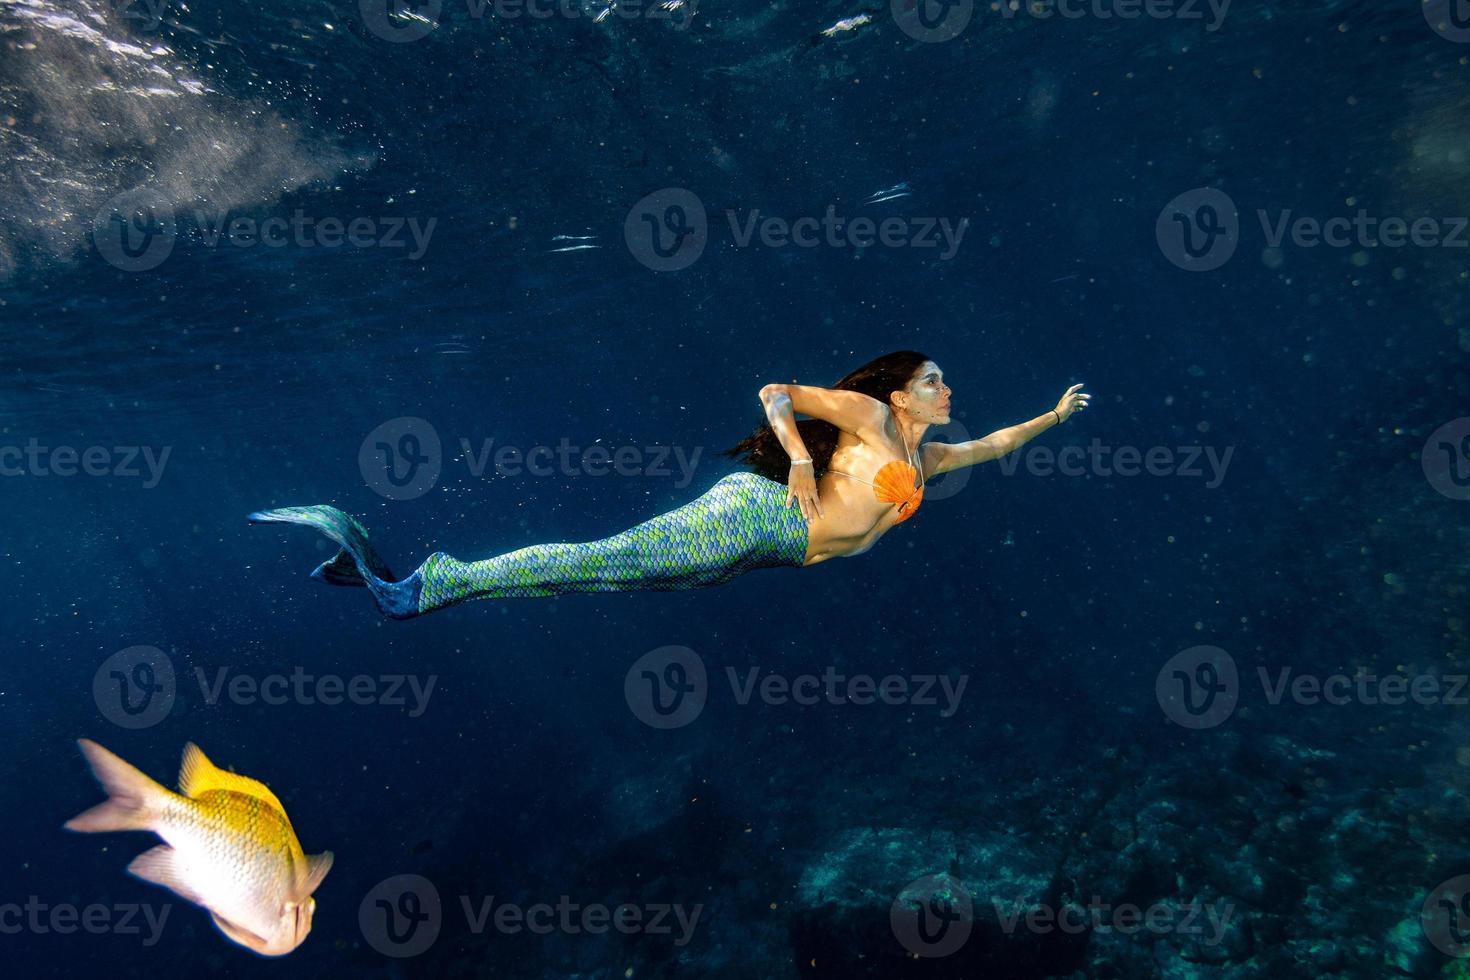 sereia nadando debaixo d'água no mar azul profundo foto